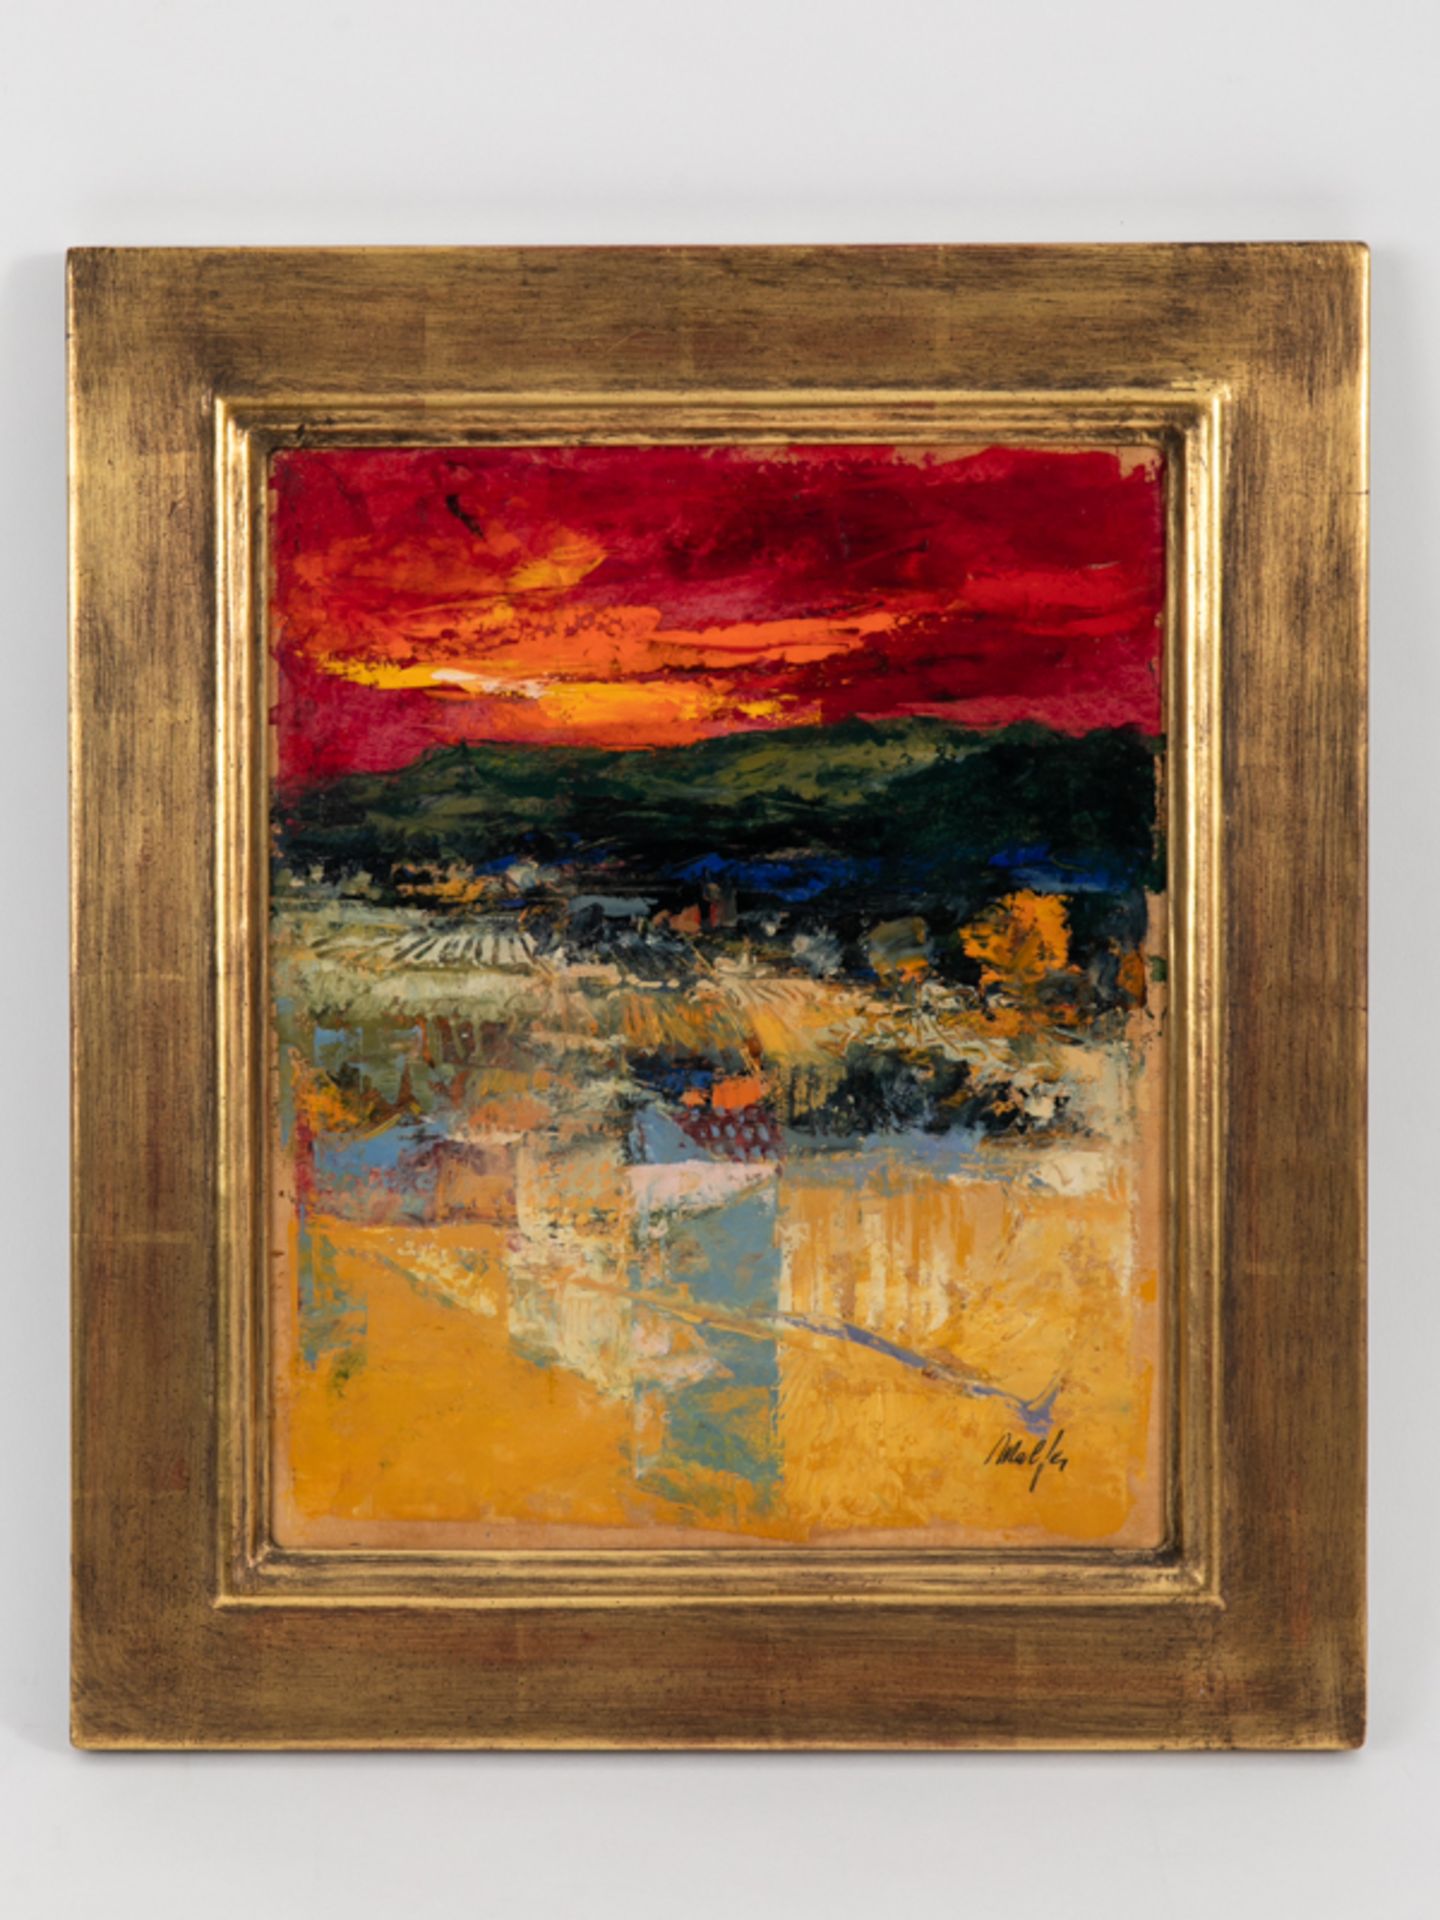 Malfer, Mario (* 1941). Öl auf Malkarton, abstrakte Landschafts-Farbkomposition unter leuchten